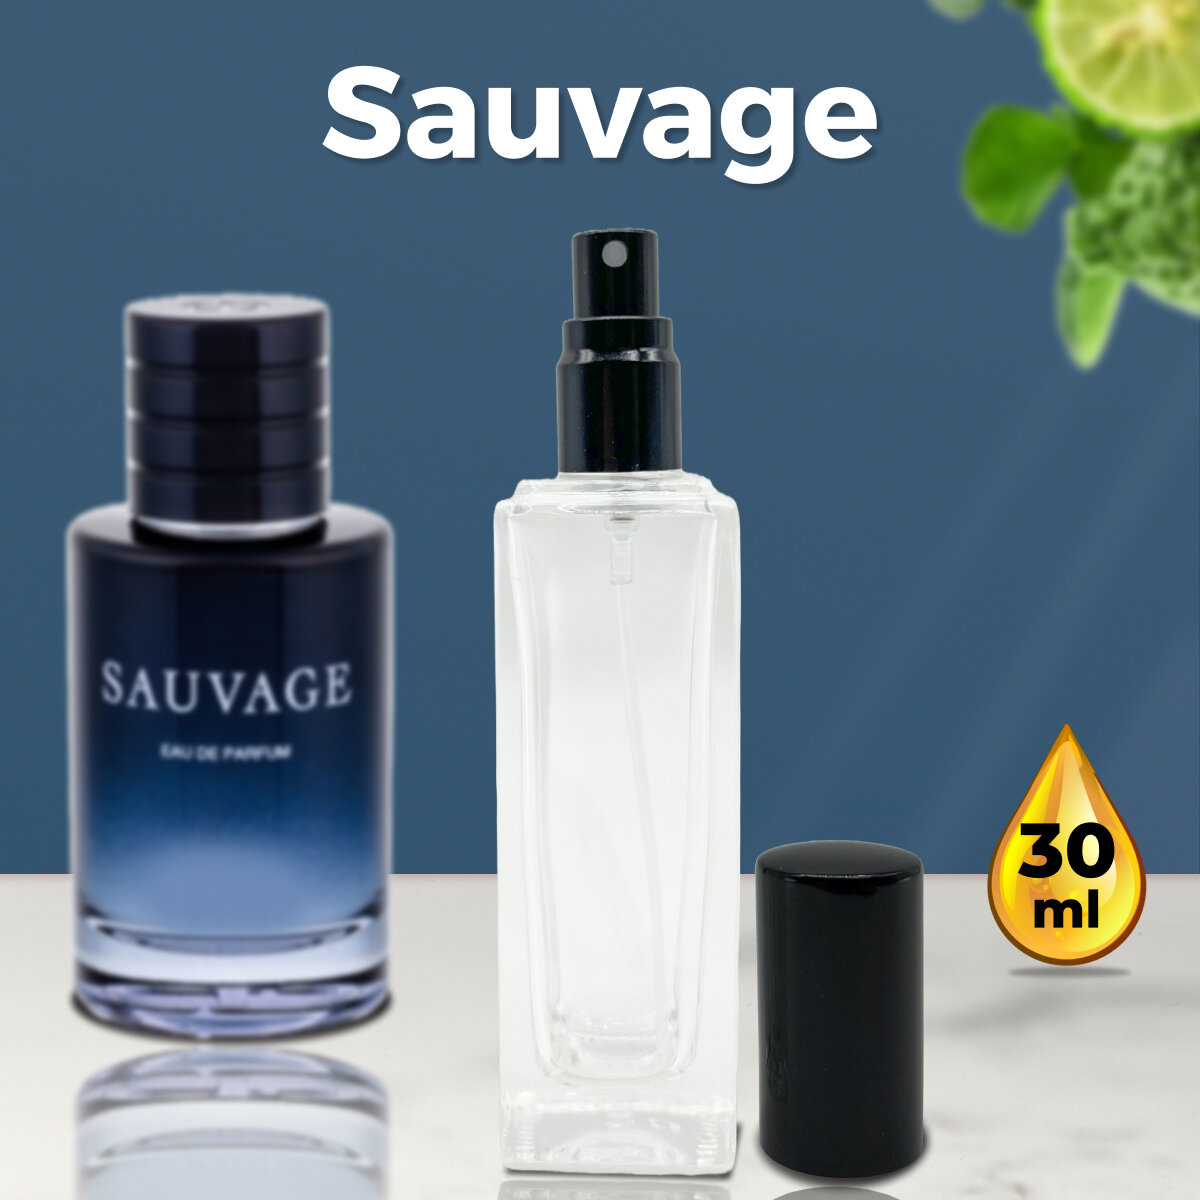 Gratus Parfum Savage духи мужские масляные 30 мл (спрей) + подарок